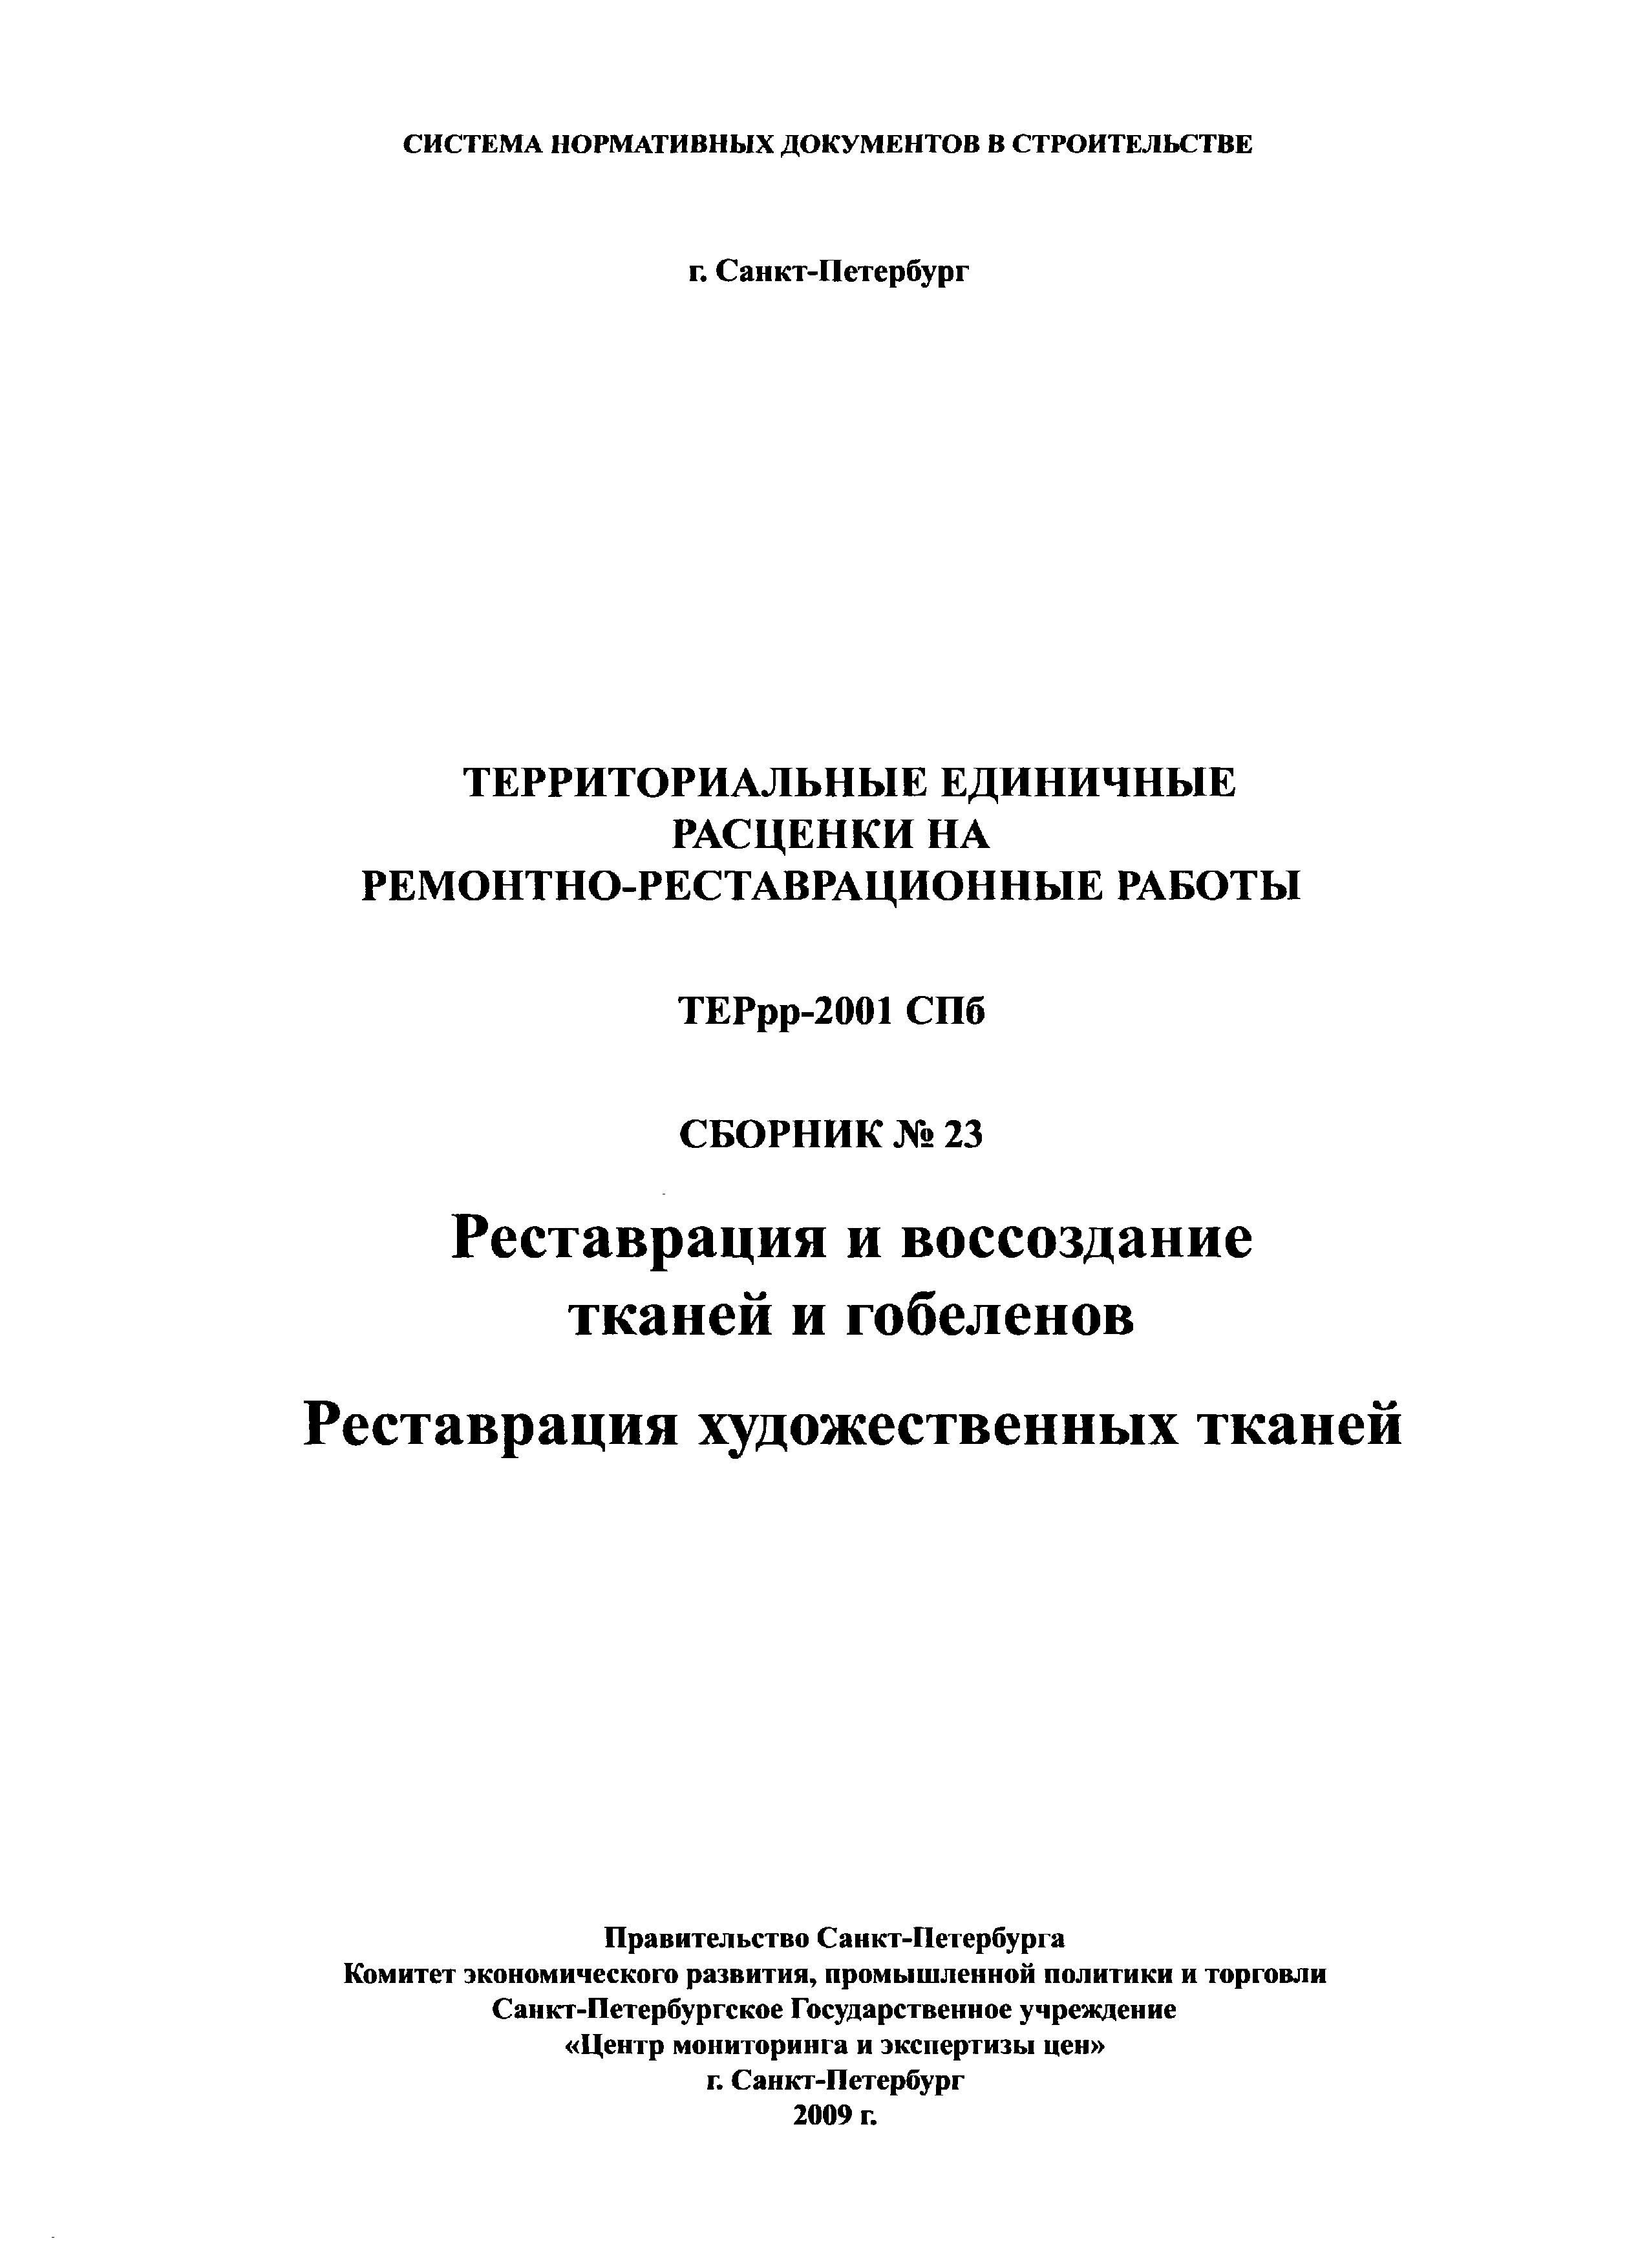 ТЕРрр 2001-23 СПб